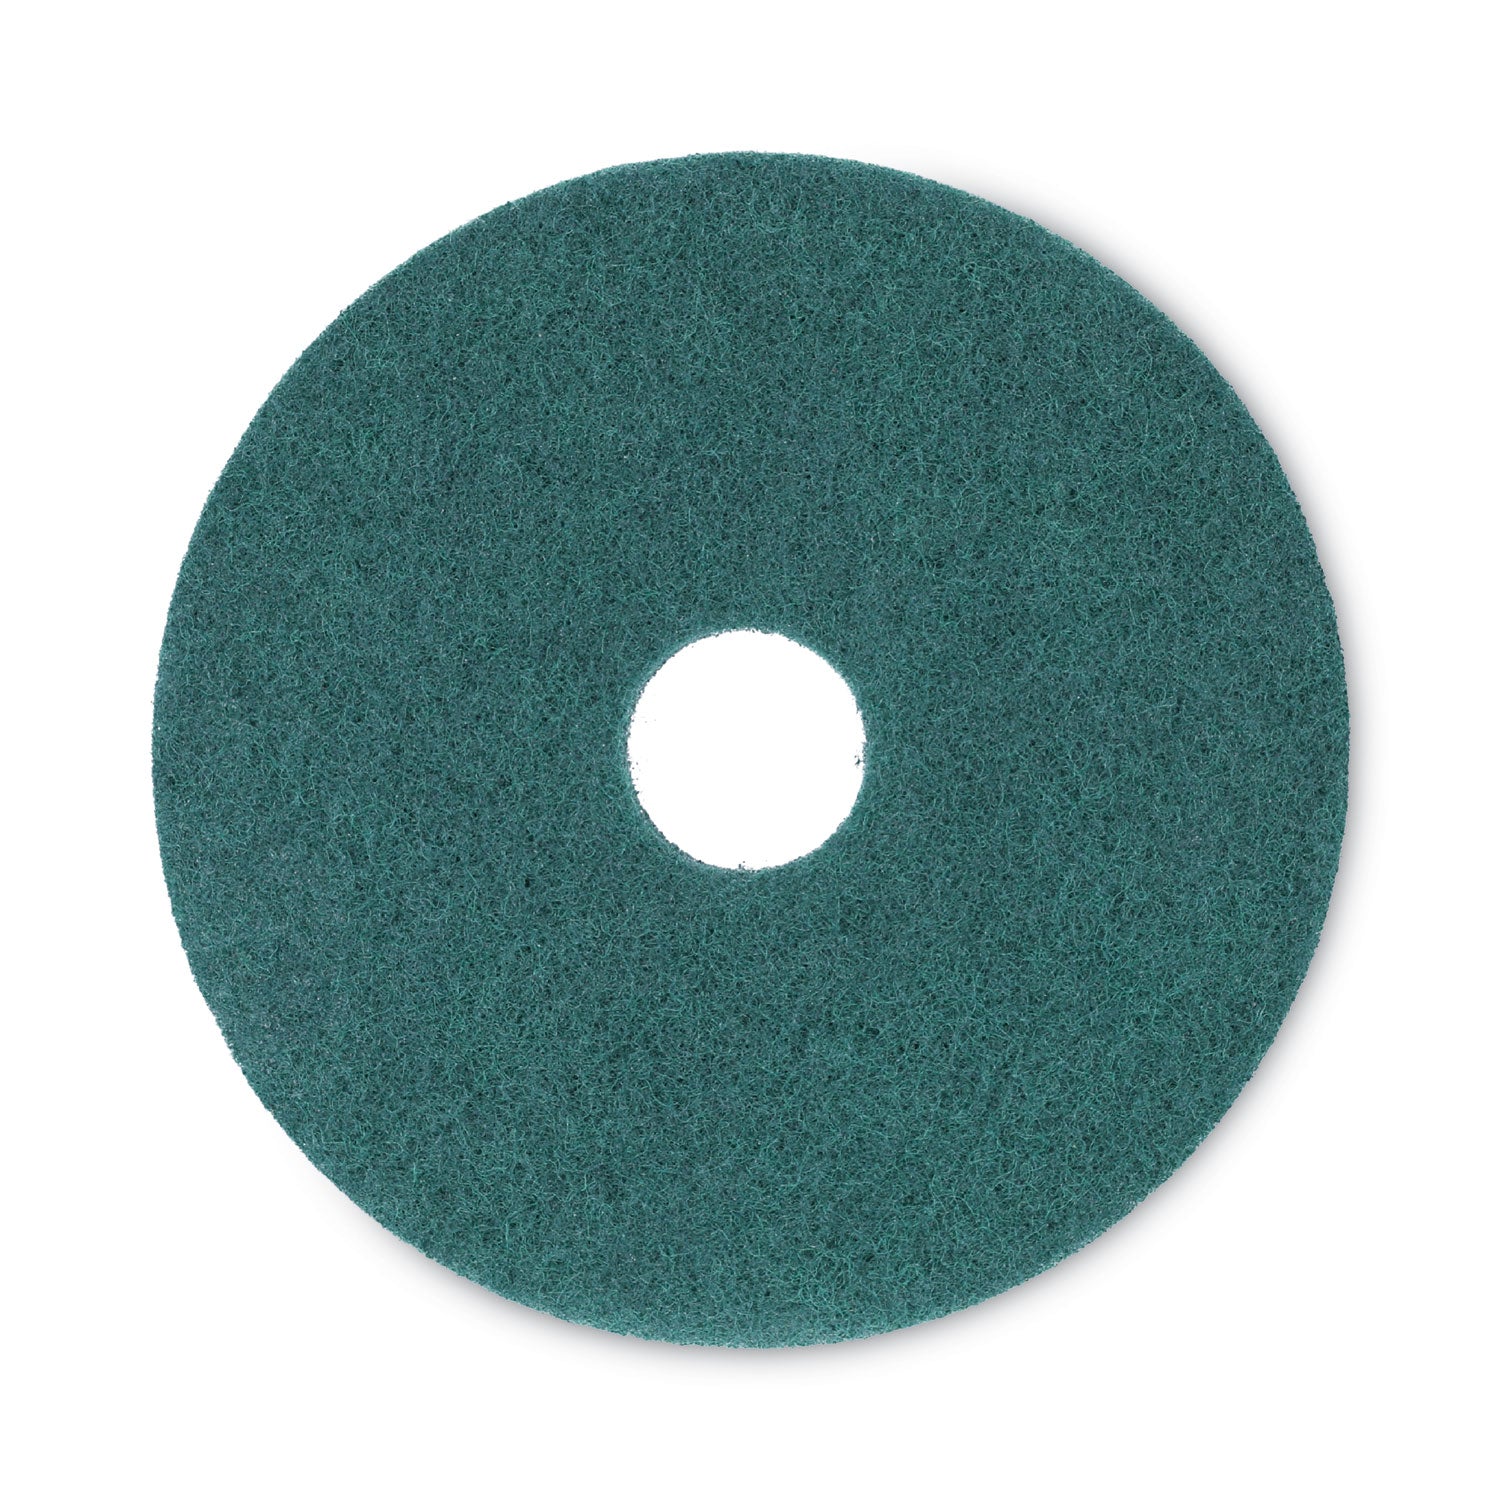 heavy-duty-scrubbing-floor-pads-16-diameter-green-5-carton_bwk4016gre - 1